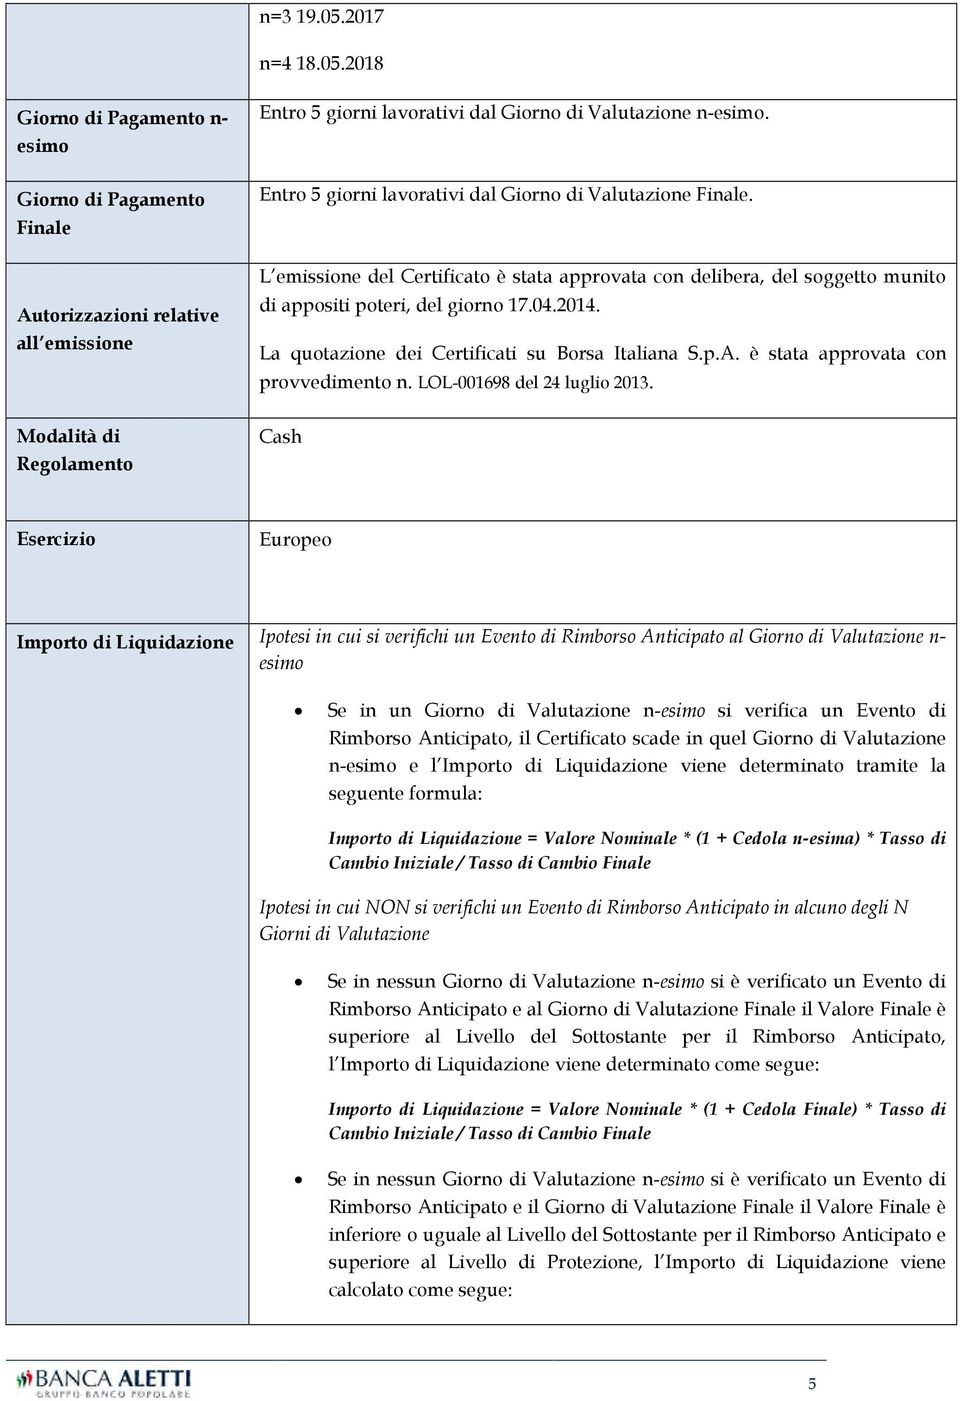 La quotazione dei Certificati su Borsa Italiana S.p.A. è stata approvata con provvedimento n. LOL-001698 del 24 luglio 2013.